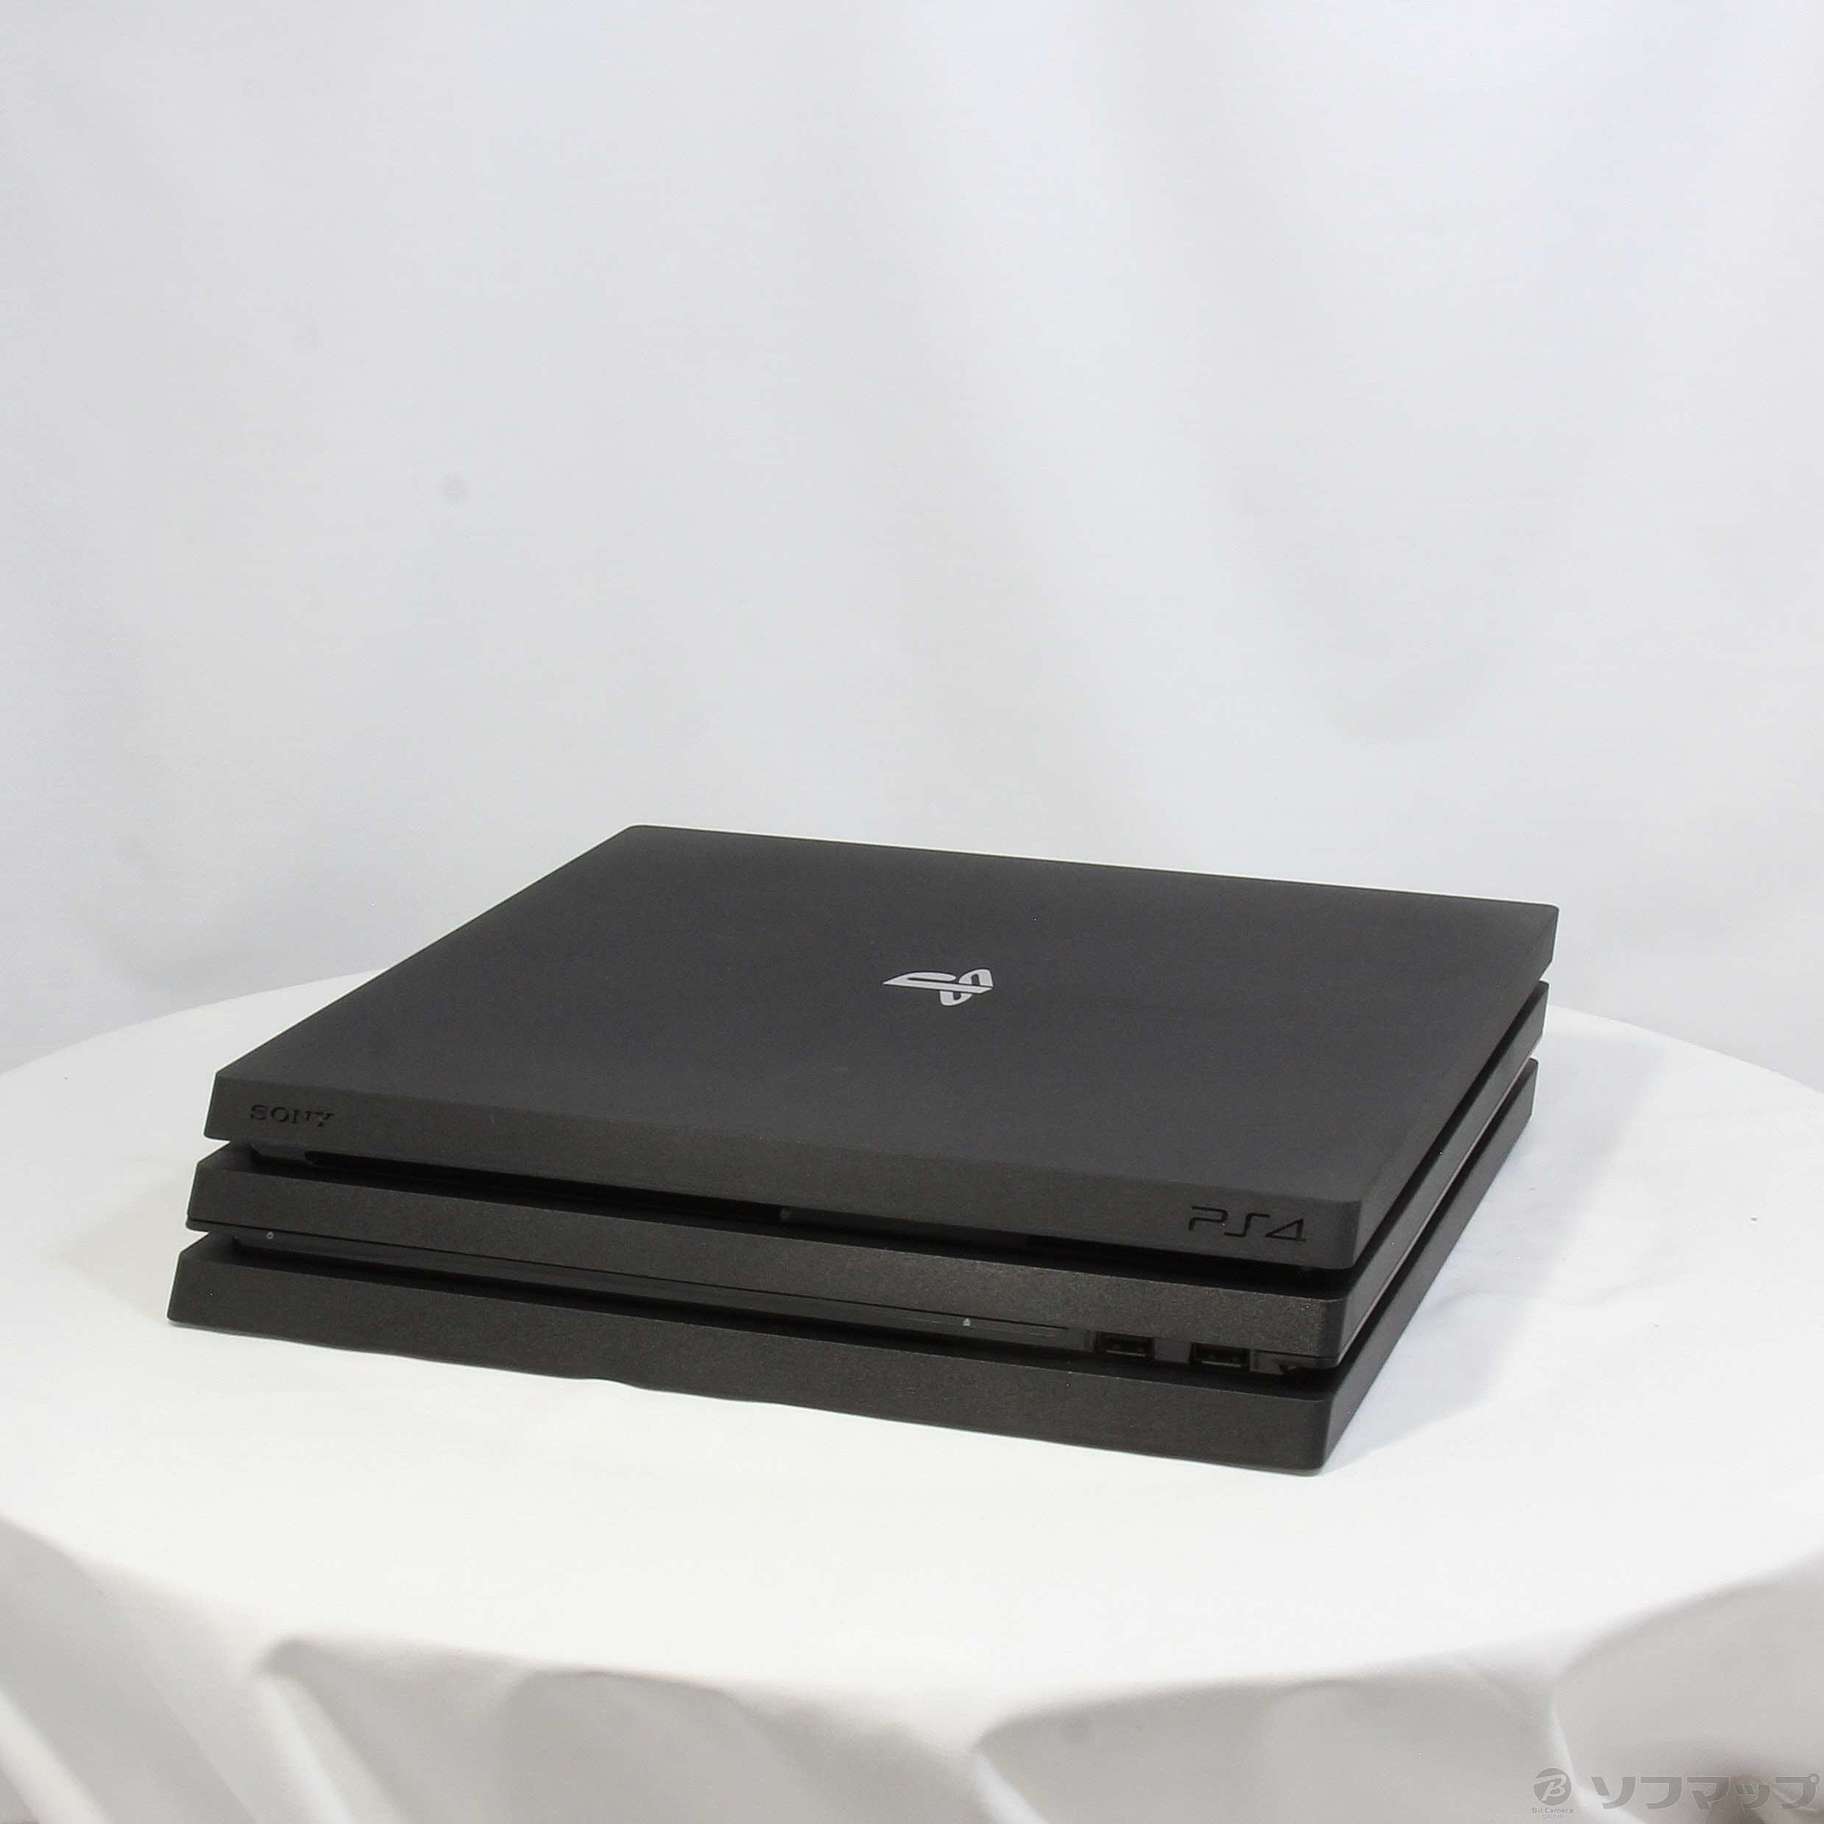 大人気新品 PlayStation PRO CUH-7100BB